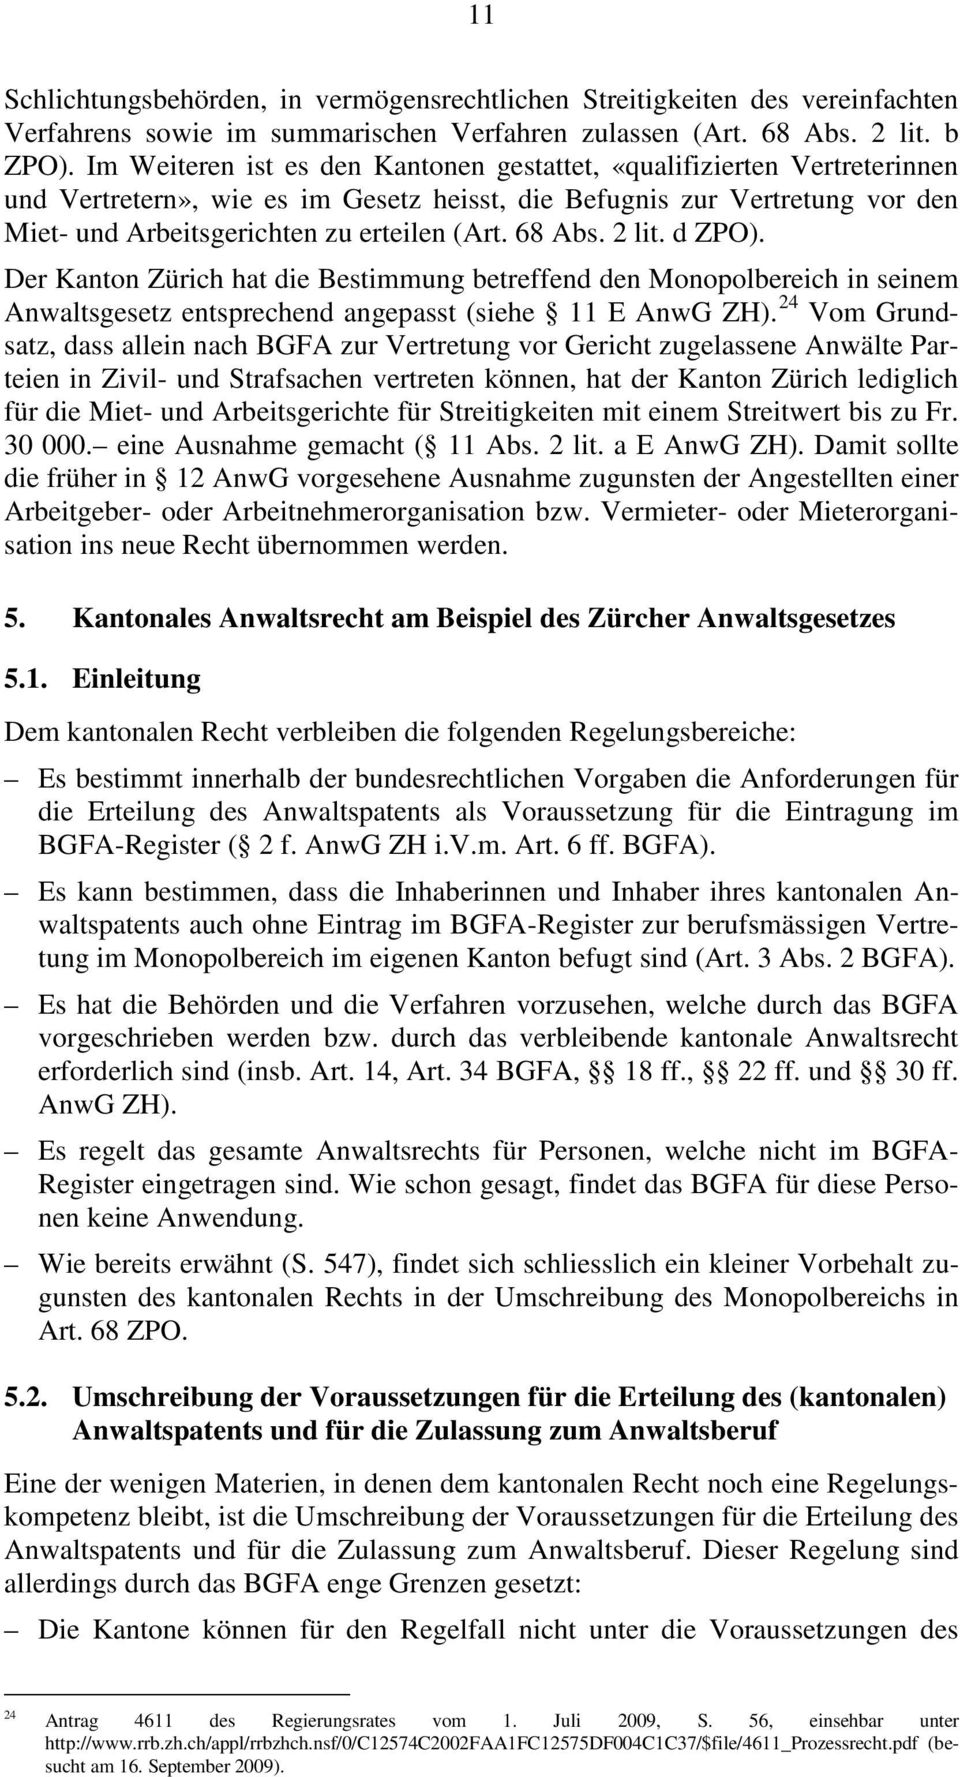 68 Abs. 2 lit. d ZPO). Der Kanton Zürich hat die Bestimmung betreffend den Monopolbereich in seinem Anwaltsgesetz entsprechend angepasst (siehe 11 E AnwG ZH).